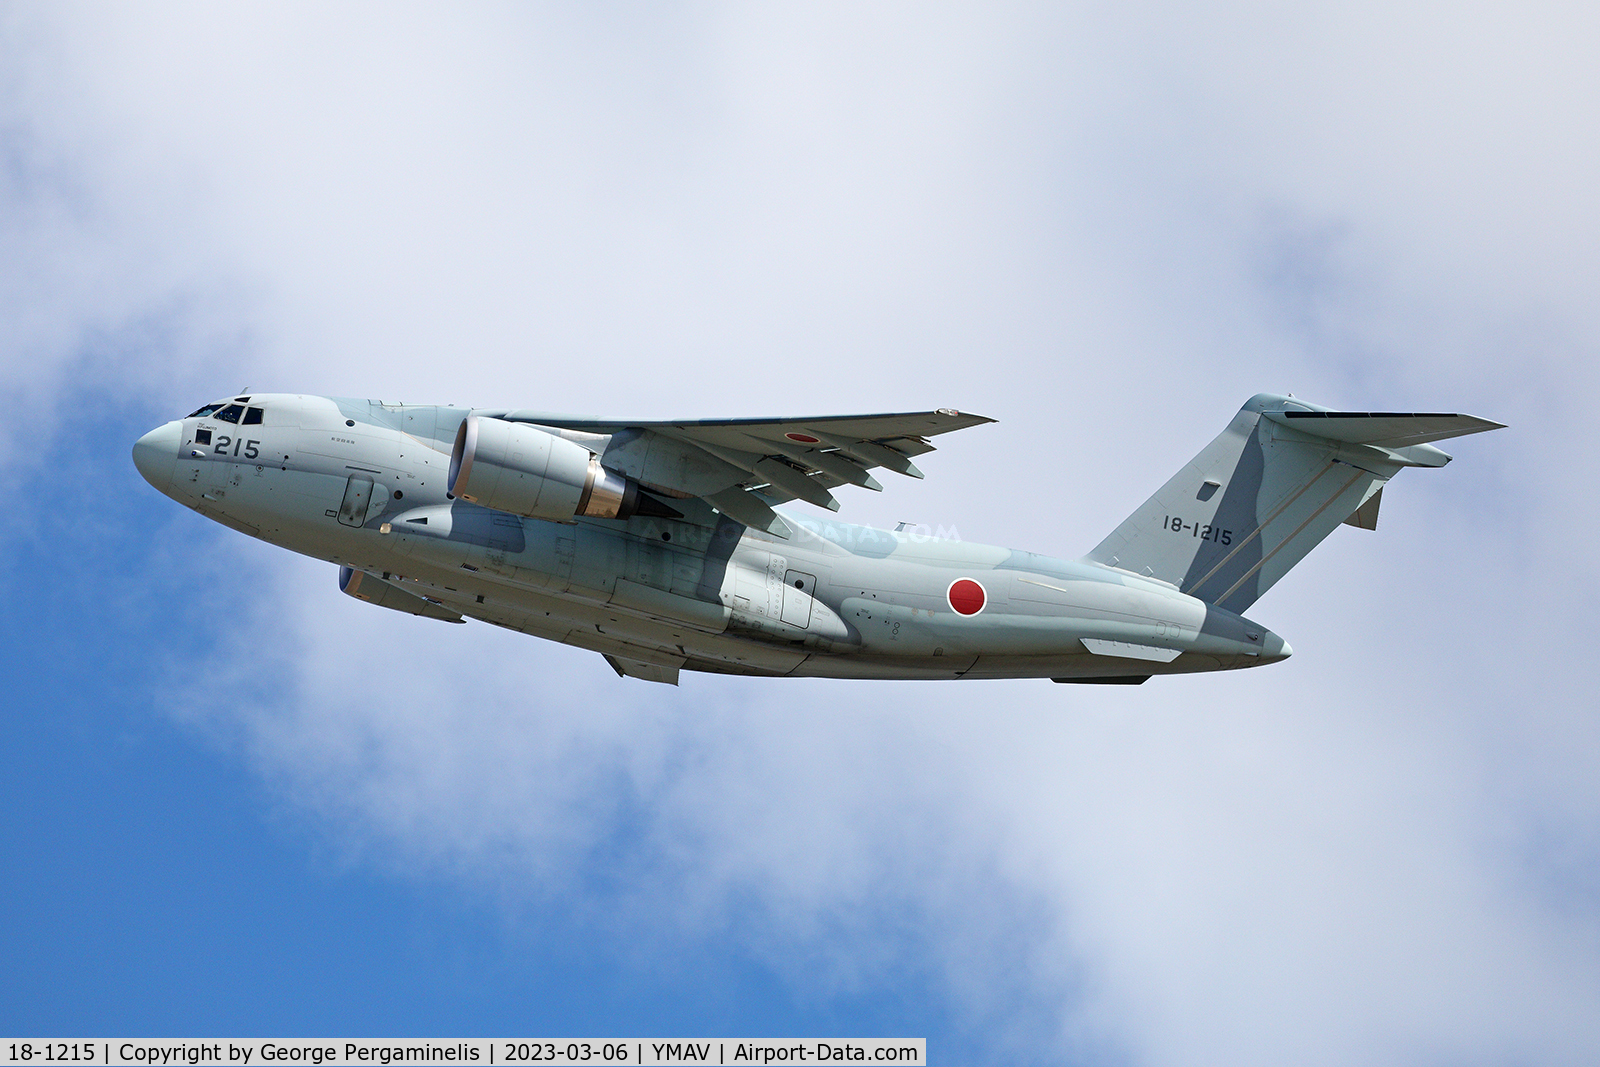 18-1215, Kawasaki C-2 C/N 015, Departing runway 18.